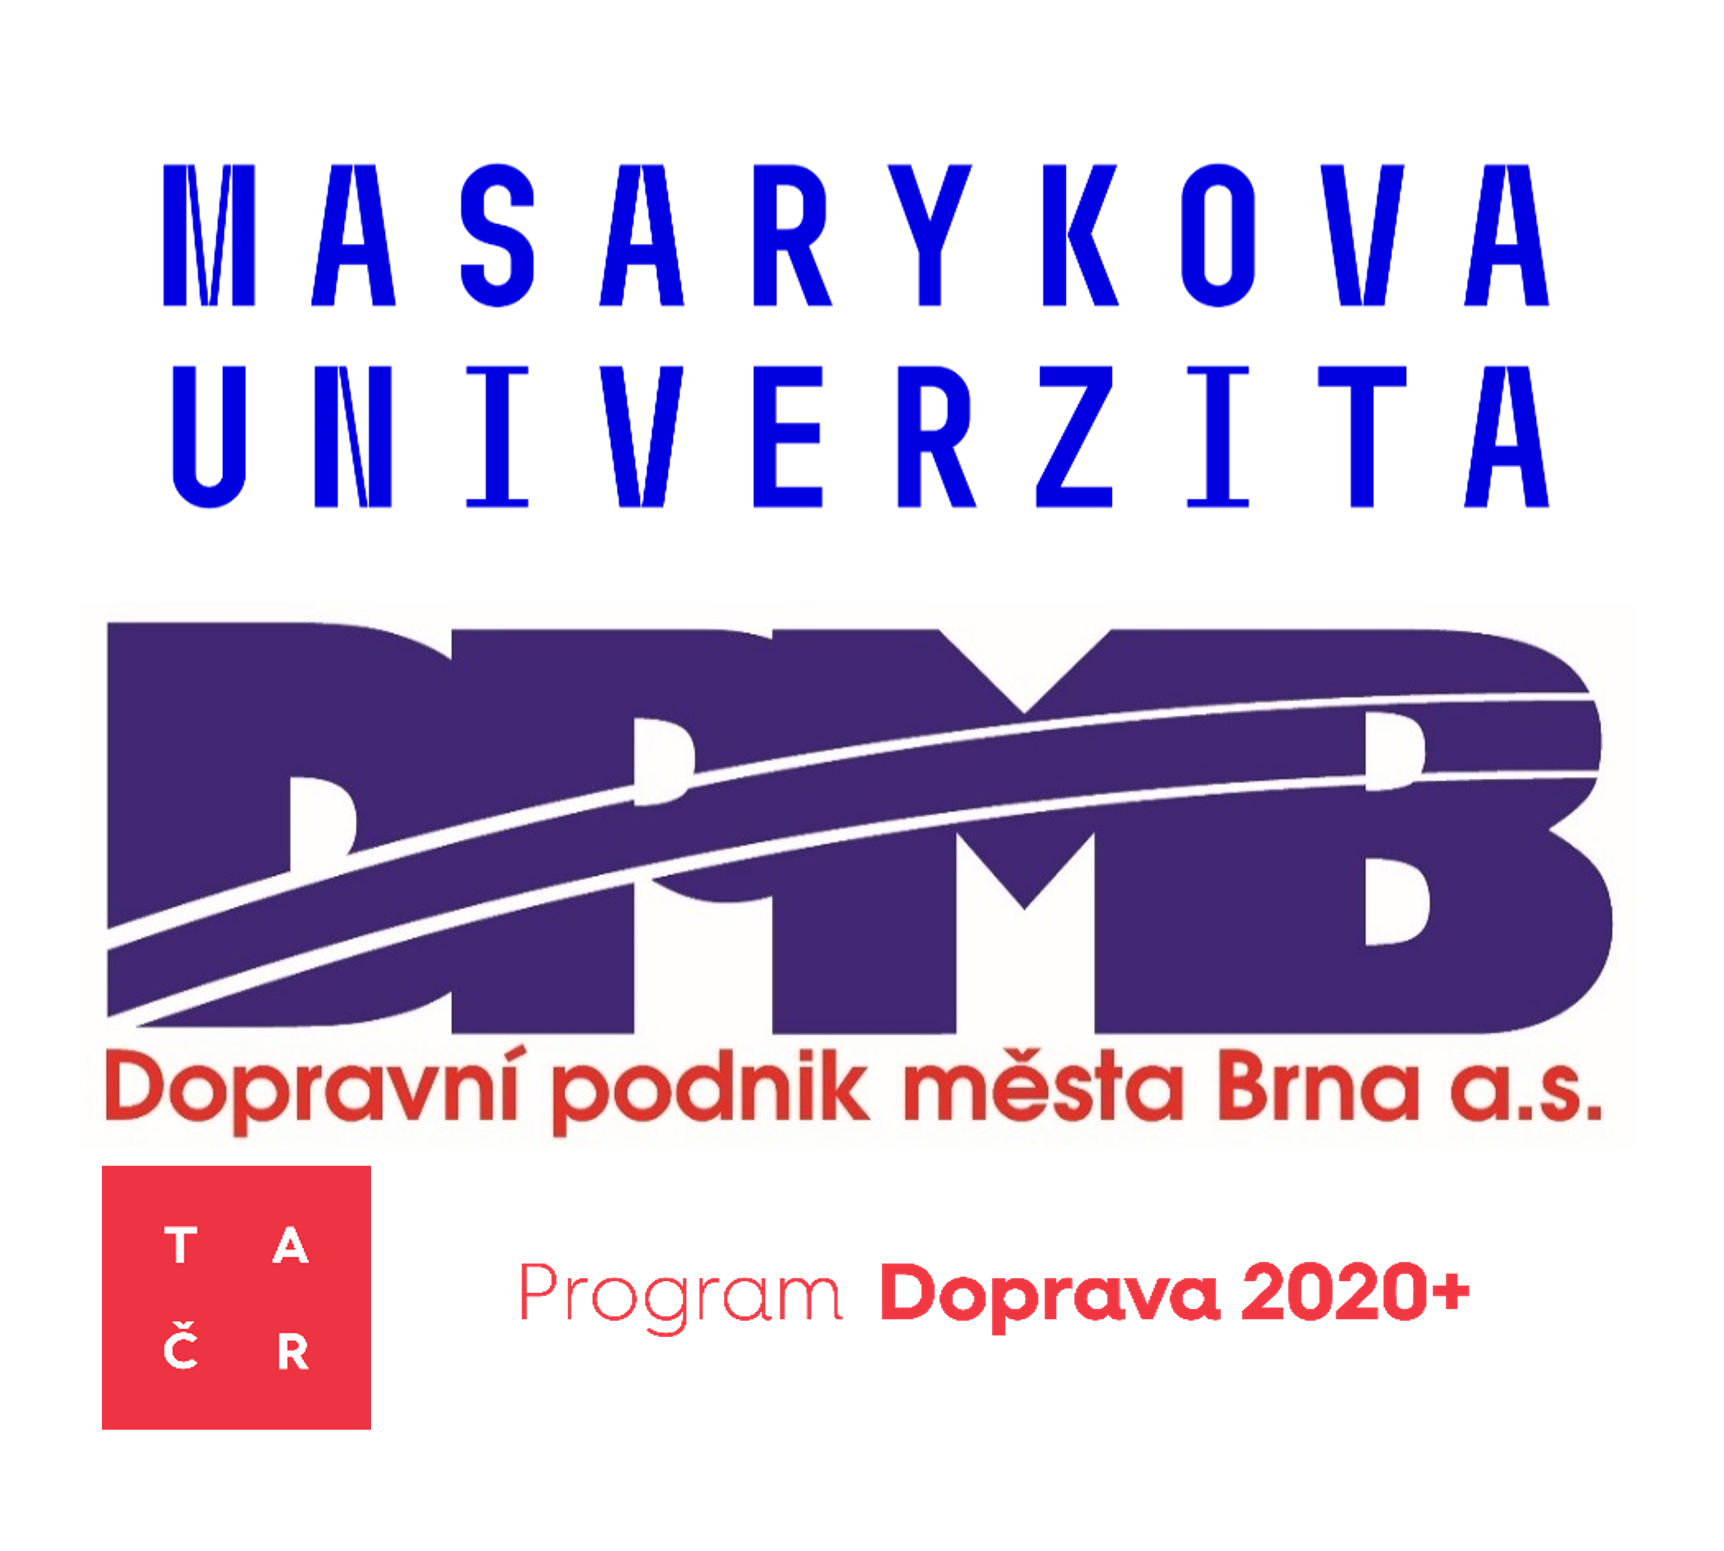 Loga Masarykovy univerzity, Dopravního podniku města Brna, Technologické agentury ČR, a Programu Doprava 2020+